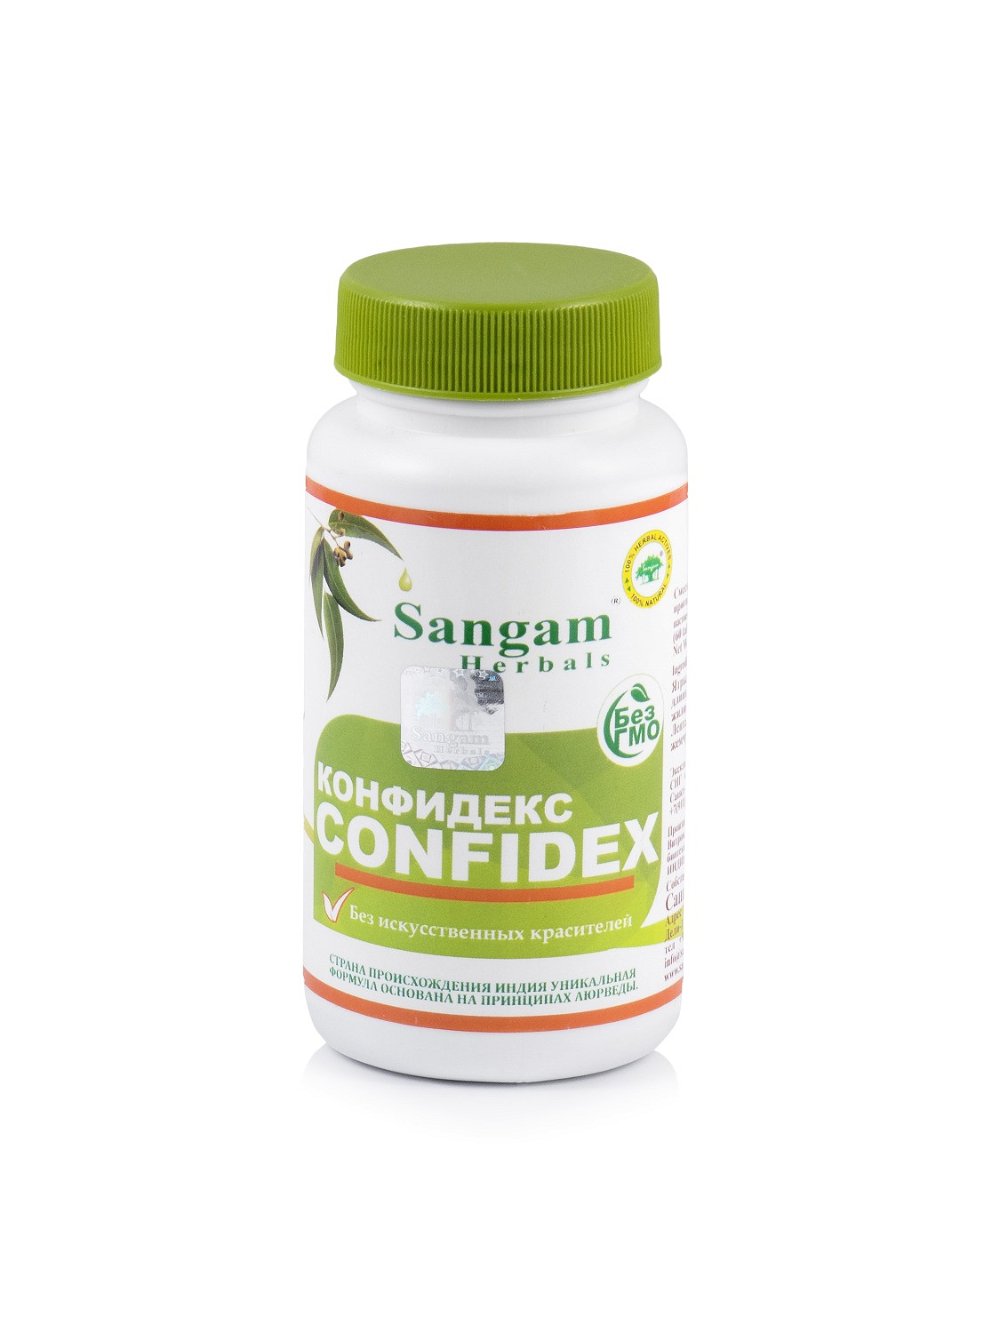 Таблетки Конфидекс Sangam Herbals (60 таблеток), Конфидекс Sangam Herbals